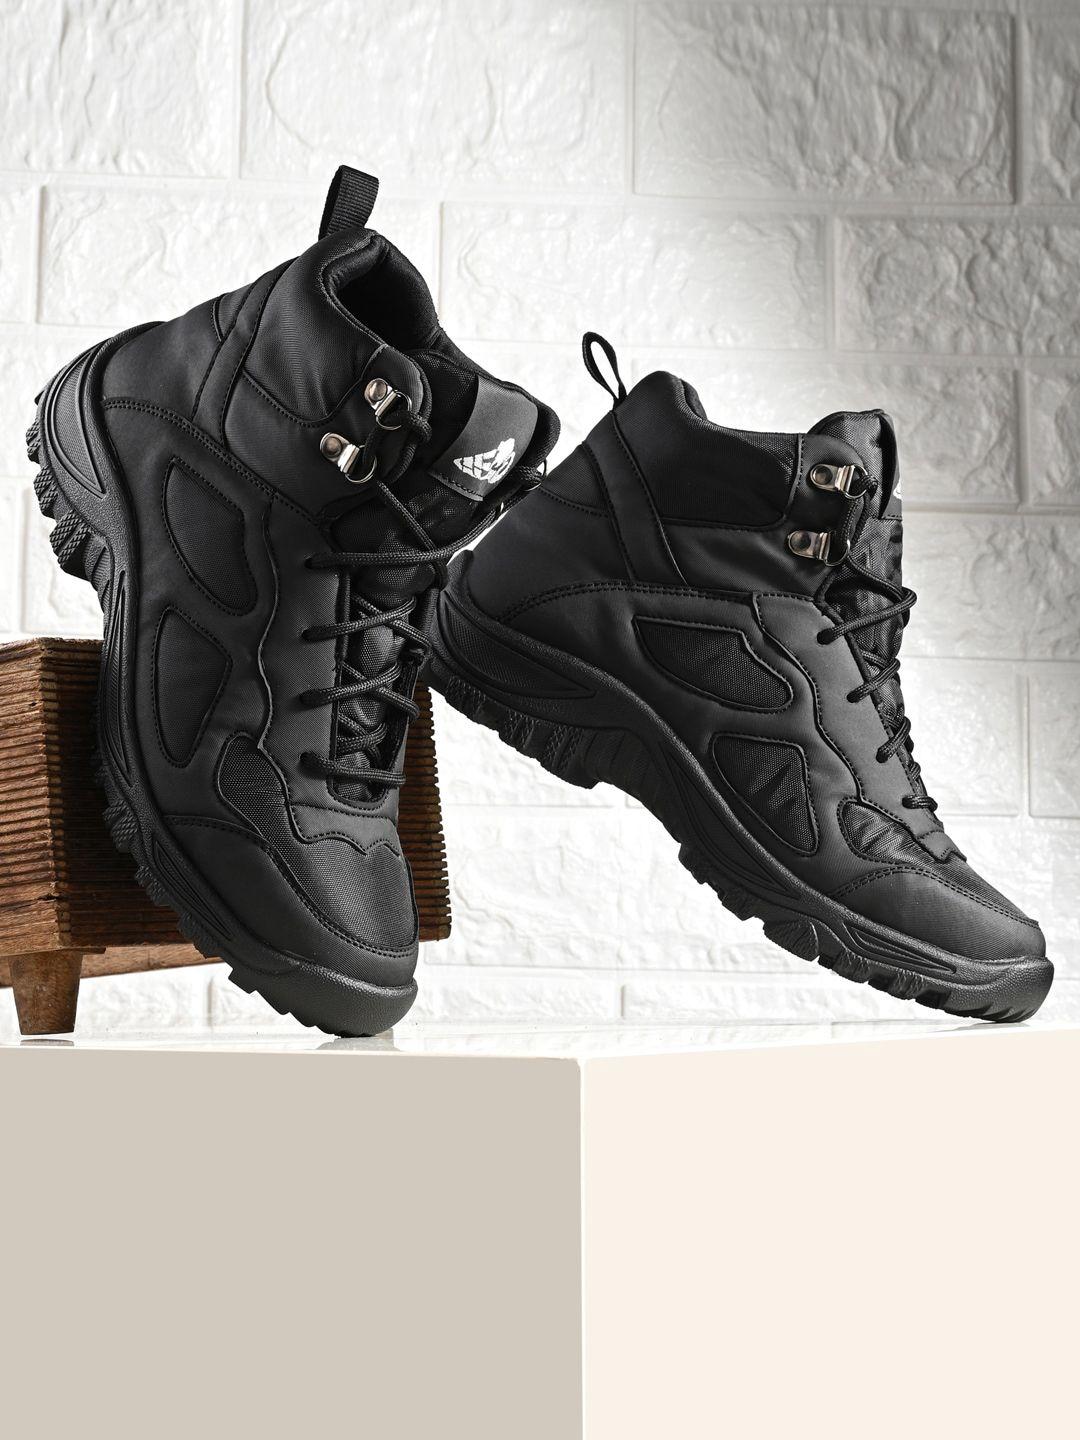 leo's fitness shoes men mid top platform-heel hiking boots